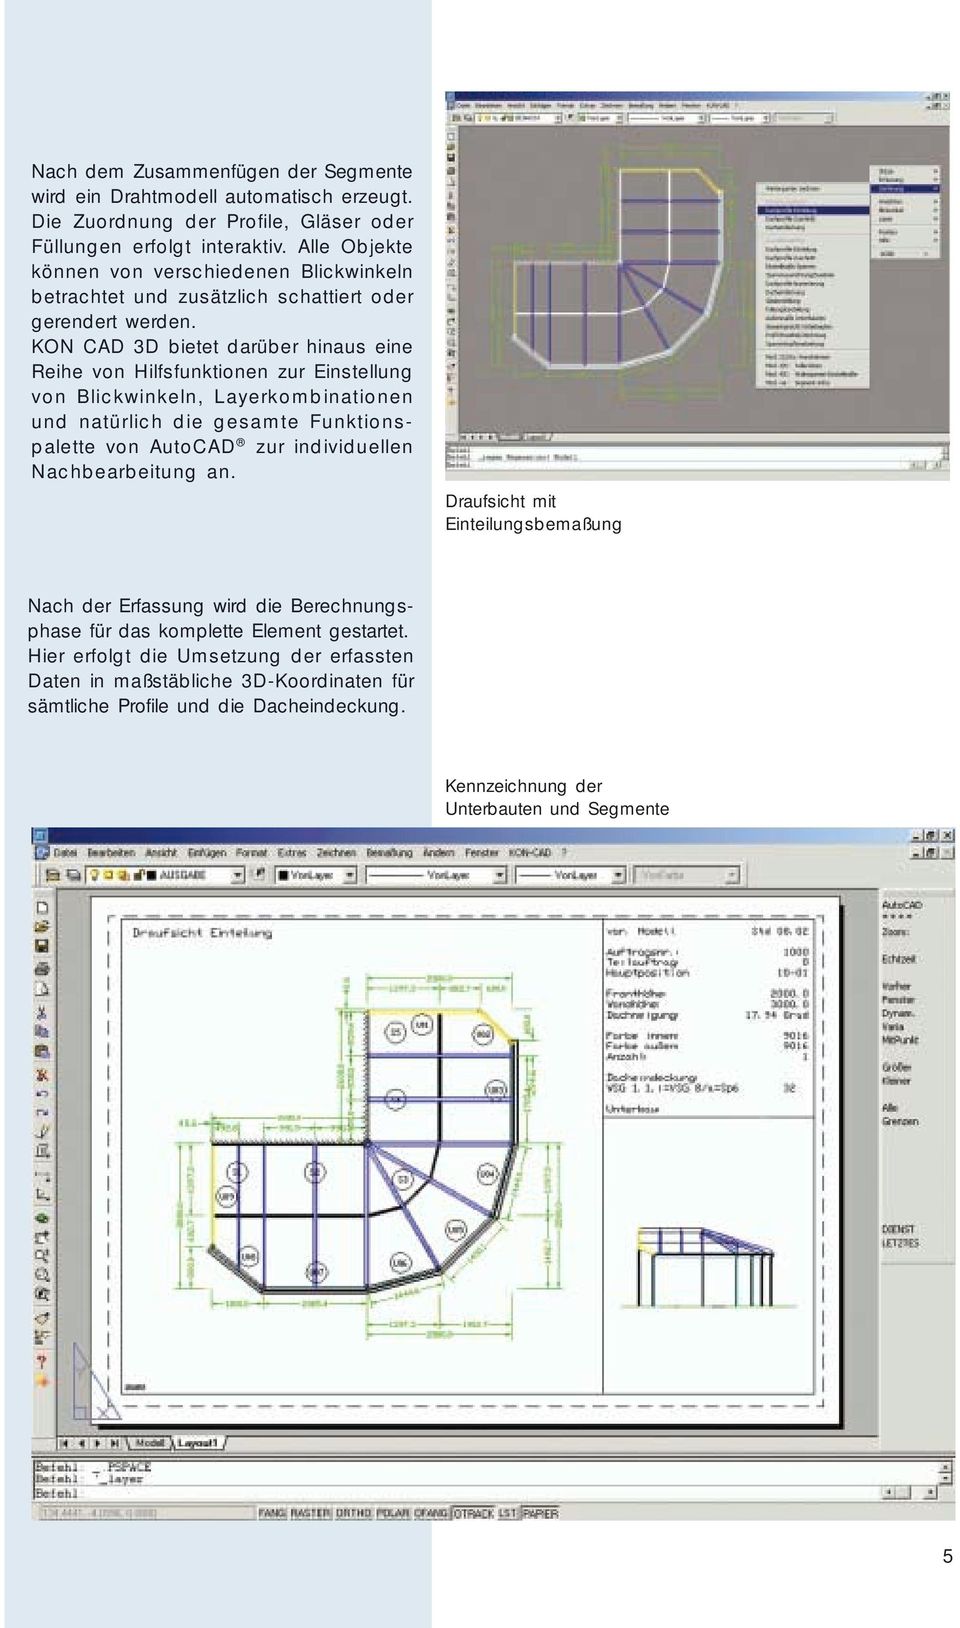 KON CAD 3D bietet darüber hinaus eine Reihe von Hilfsfunktionen zur Einstellung von Blickwinkeln, Layerkombinationen und natürlich die gesamte Funktionspalette von AutoCAD zur